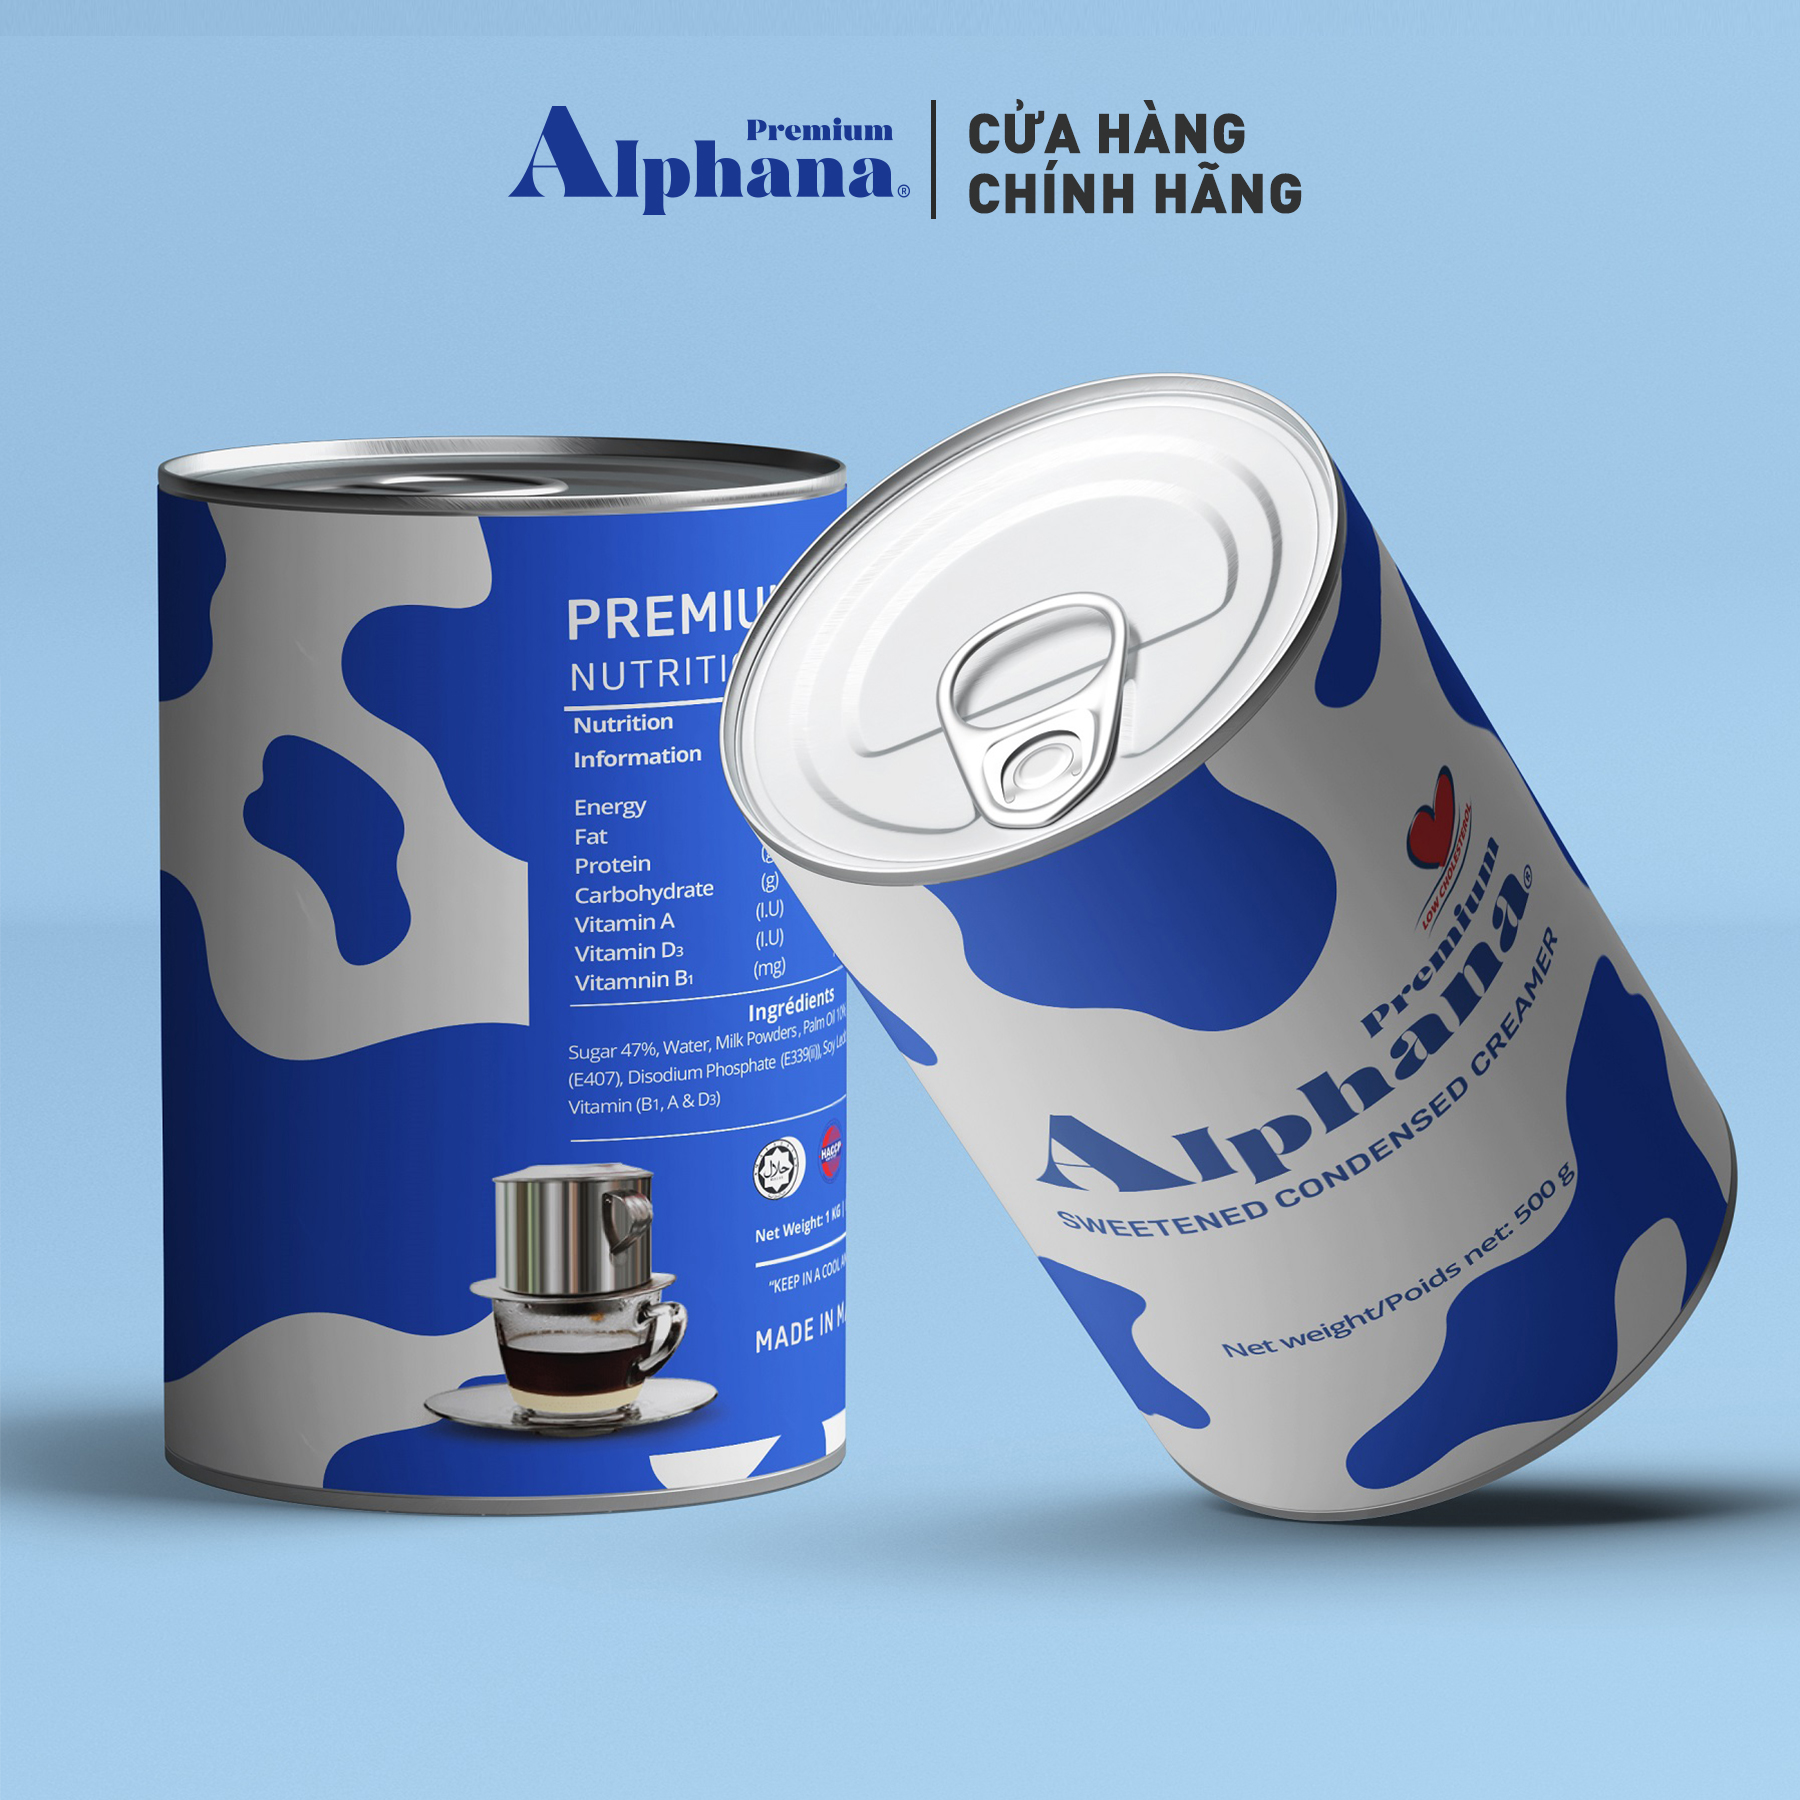 Thùng 48 Lon - Sữa Đặc Có Đường Creamer Premium Alphana nhập khẩu Malaysia Lon 500g Giàu Protein Vitamin A D3 B1 - Nắp Khui Tiện Dụng